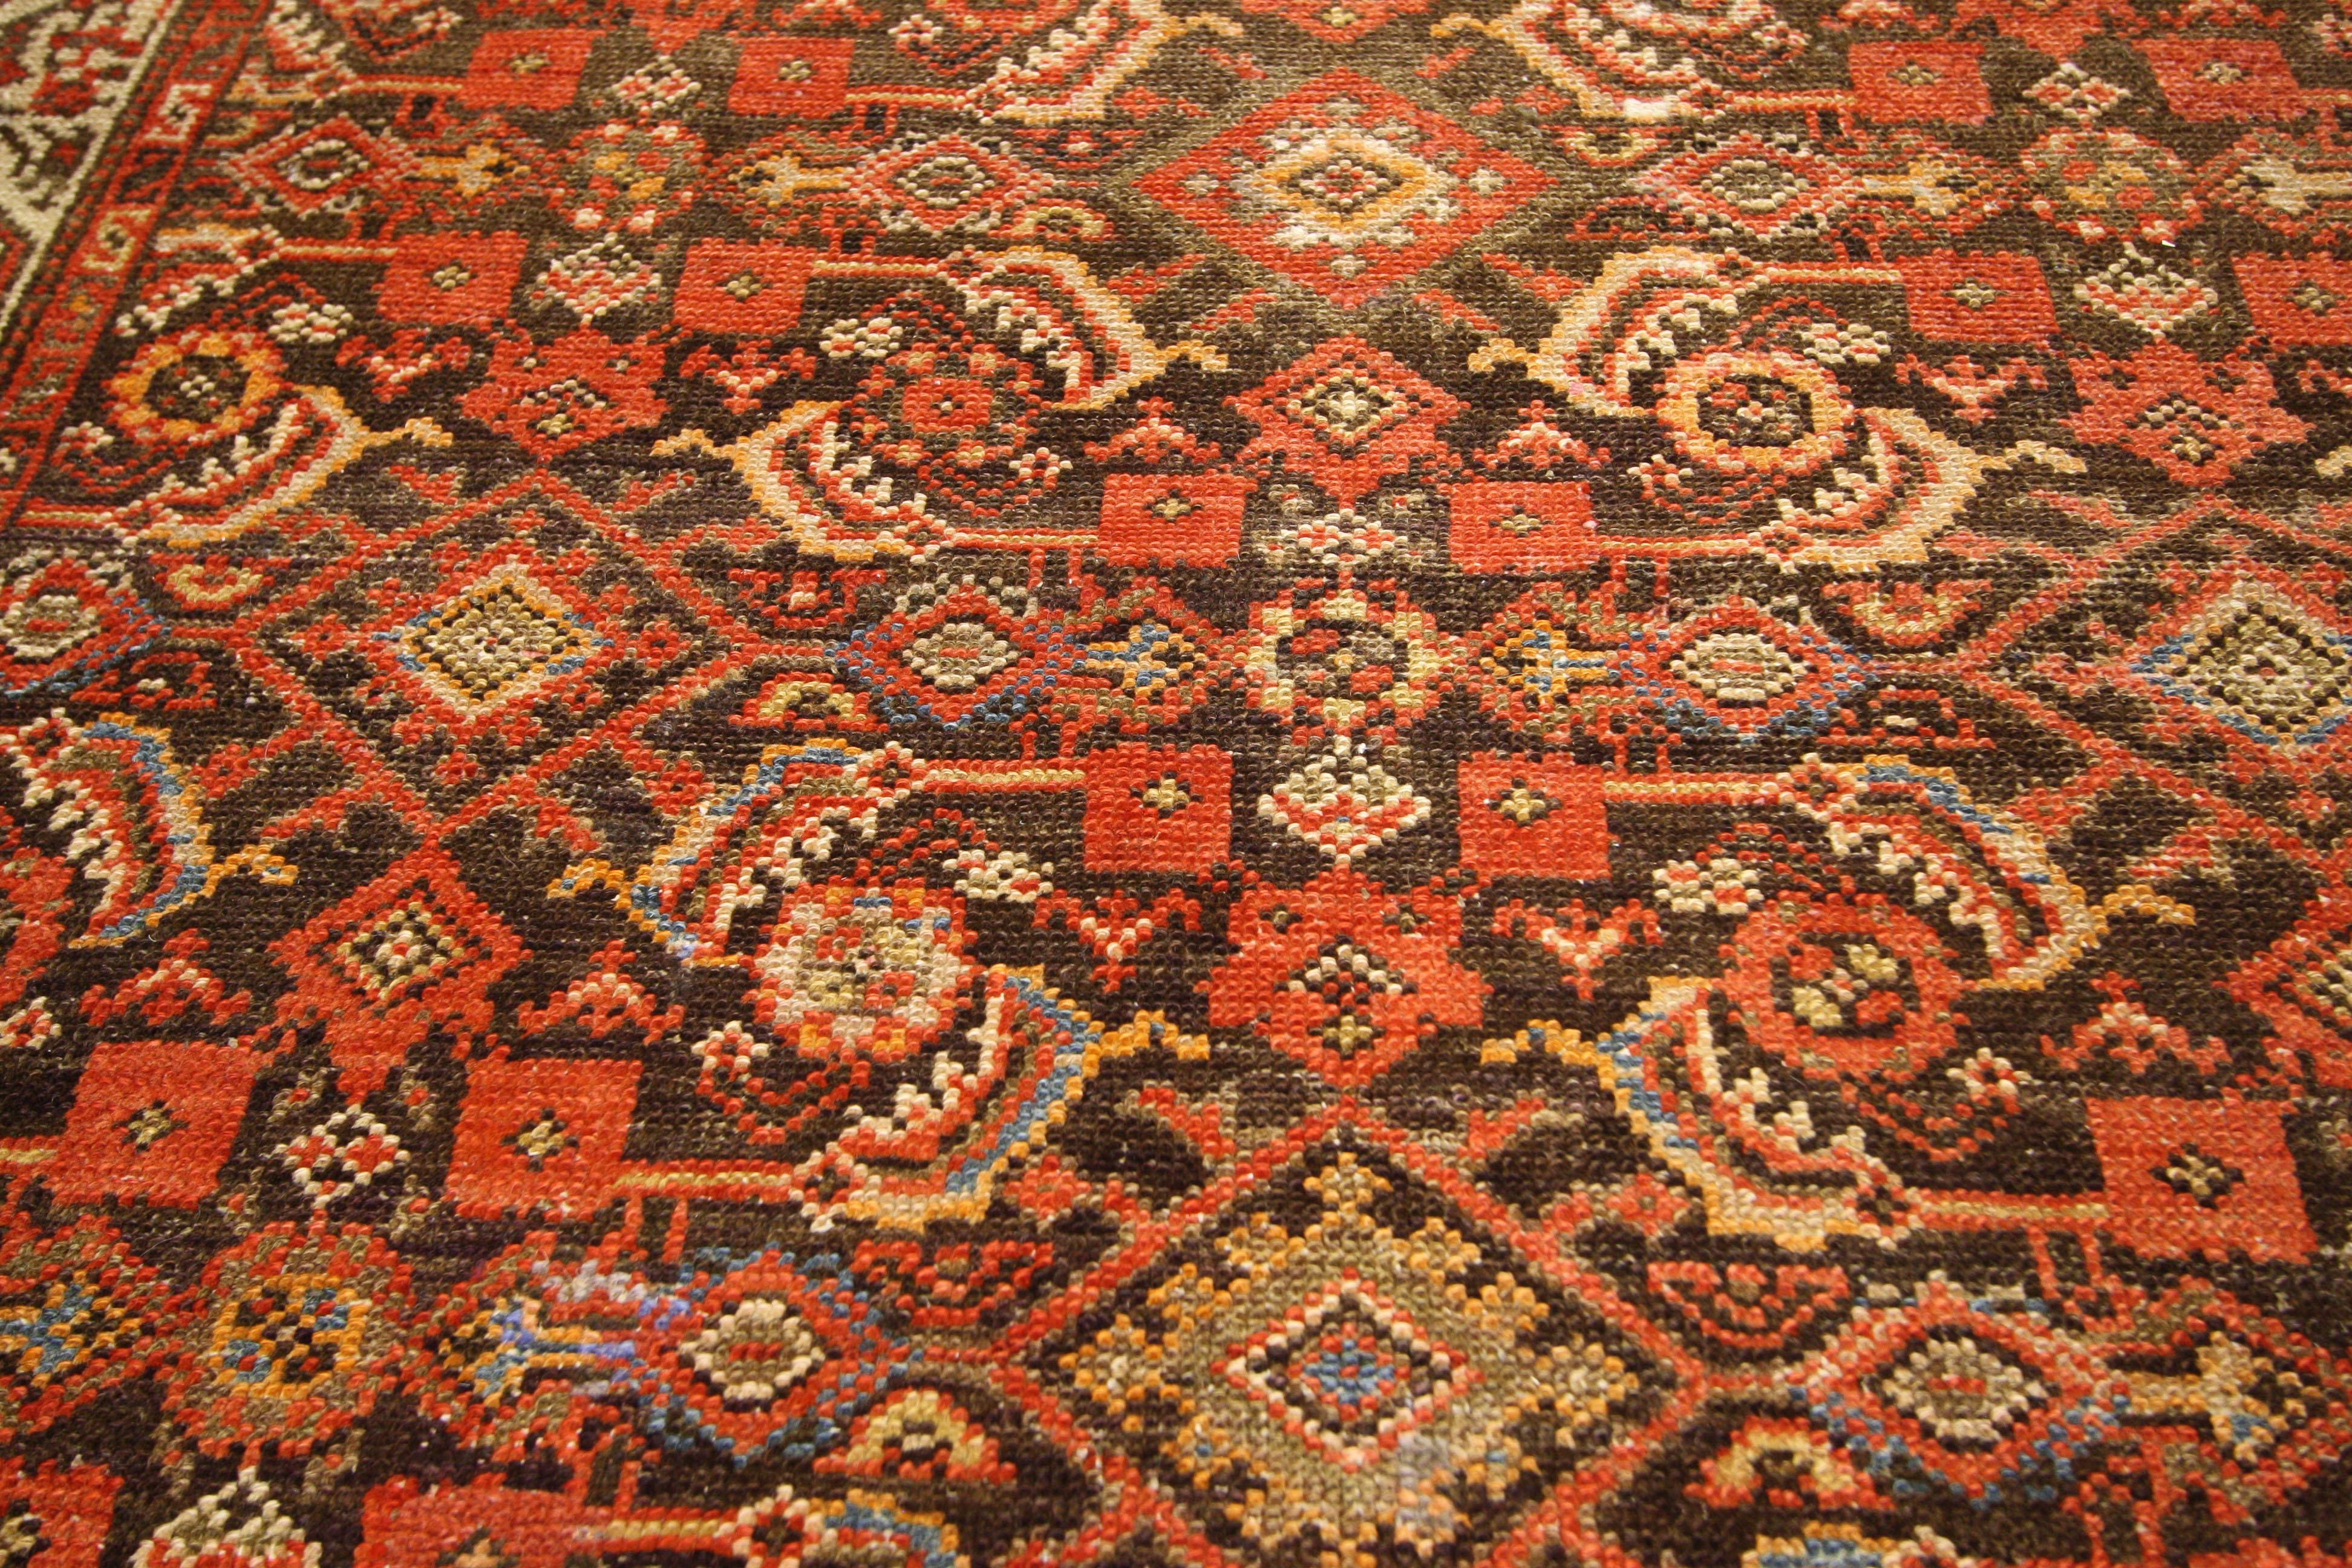 76427 Vintage Persian Malayer Rug Runner, 03'06 X 11'03. Persische Malayer-Teppichläufer aus der Region Malayer im Westen Irans sind sorgfältig gefertigte Teppiche, die für ihre länglichen Abmessungen bekannt sind und sich perfekt zur Dekoration von